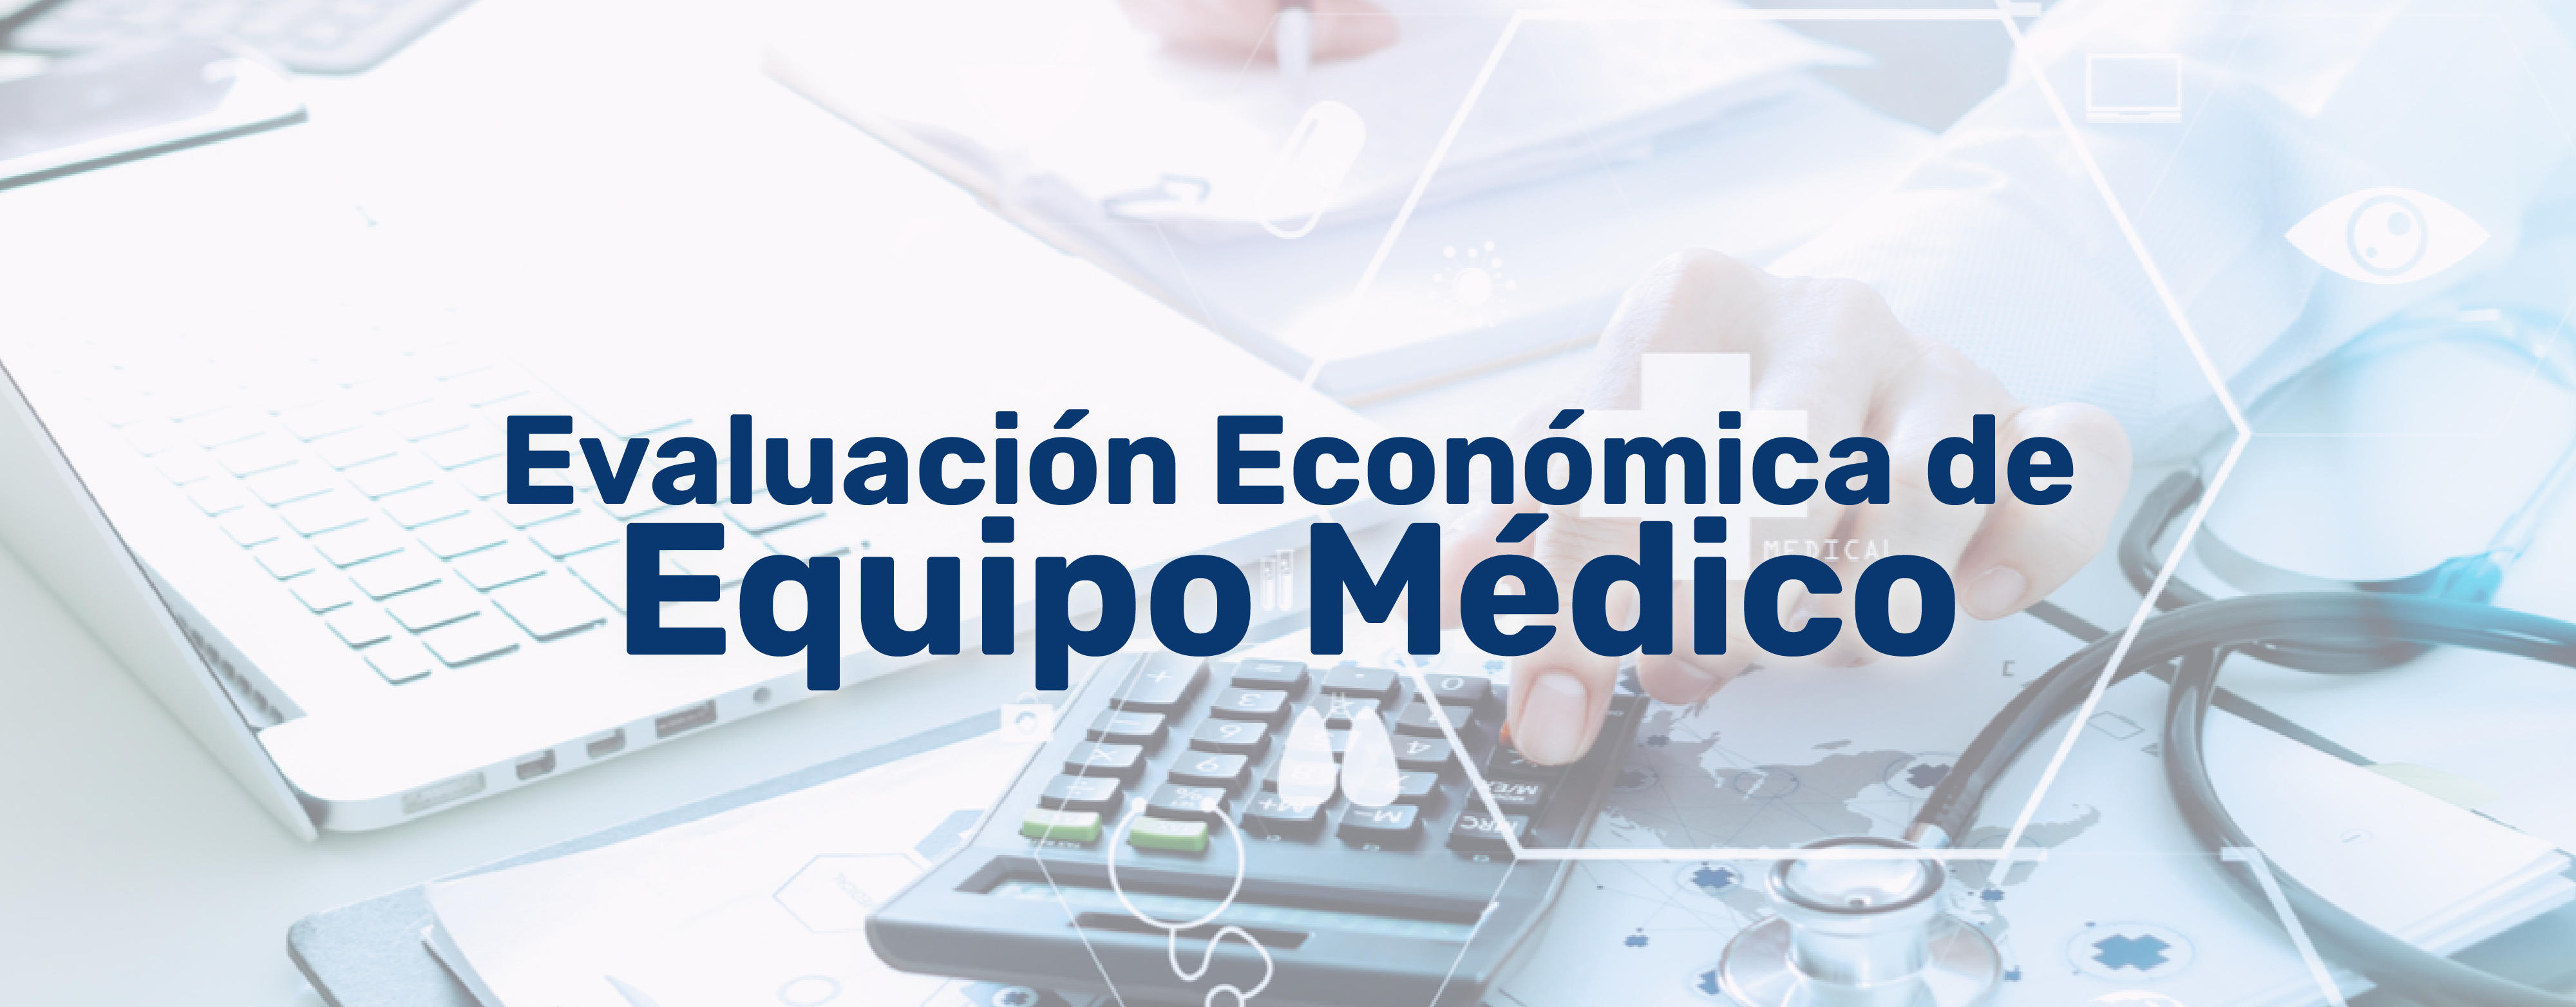 Evaluación Económica de Equipo Médico